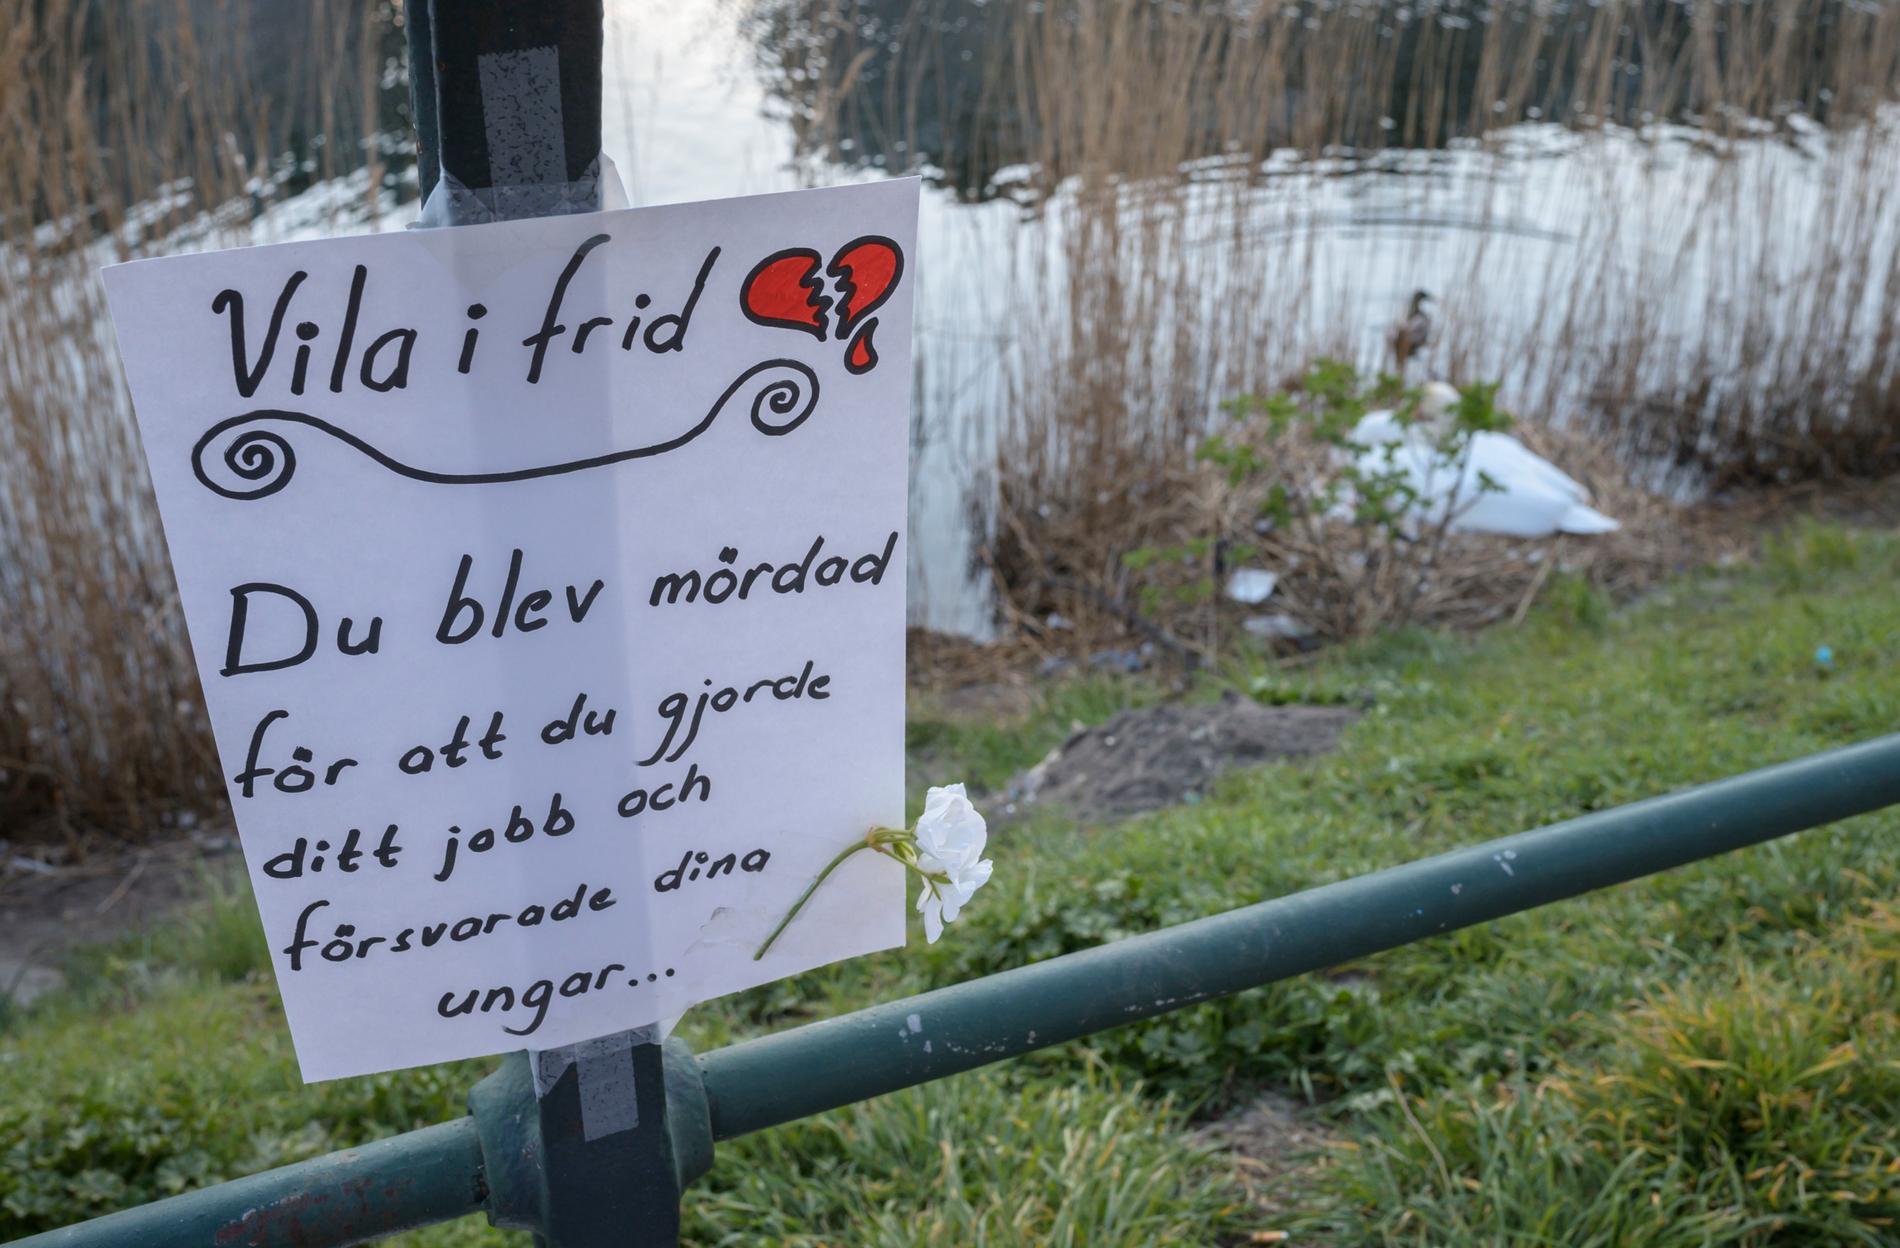 Upprörda röster höjs efter att kommunen skjutit ihjäl en svanhane i Malmö.